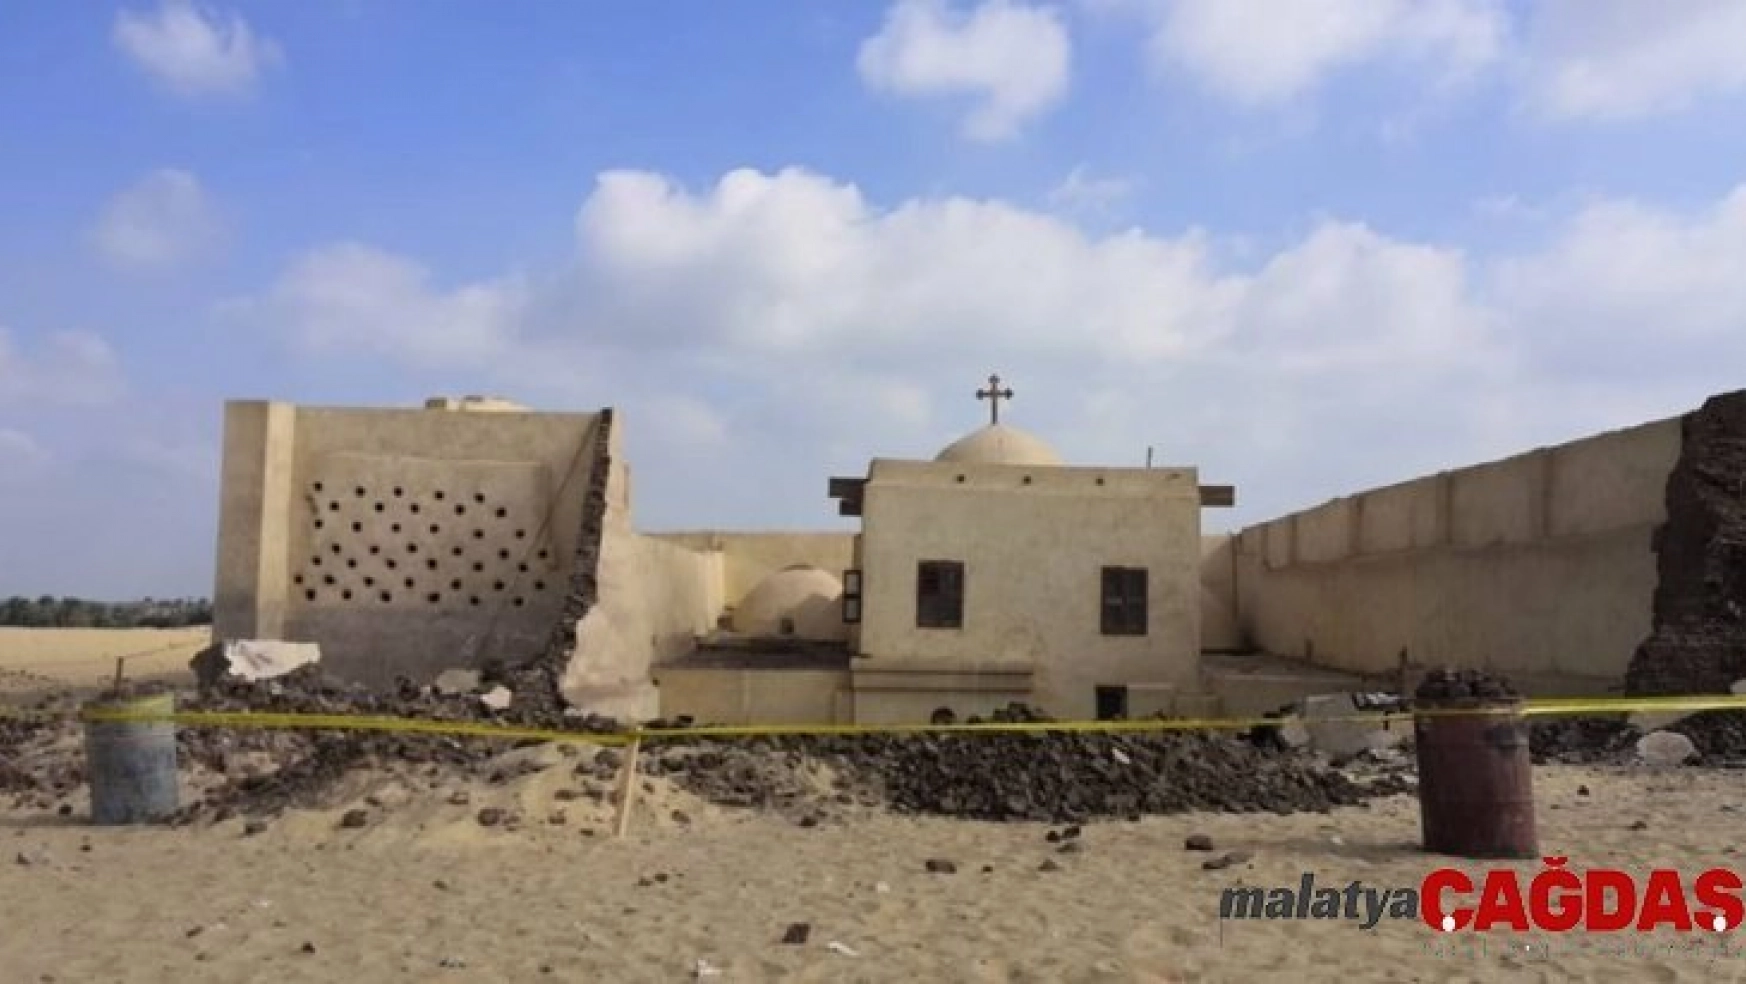 Mısır'da tarihi kilisenin duvarı çöktü: 2 ölü, 4 yaralı